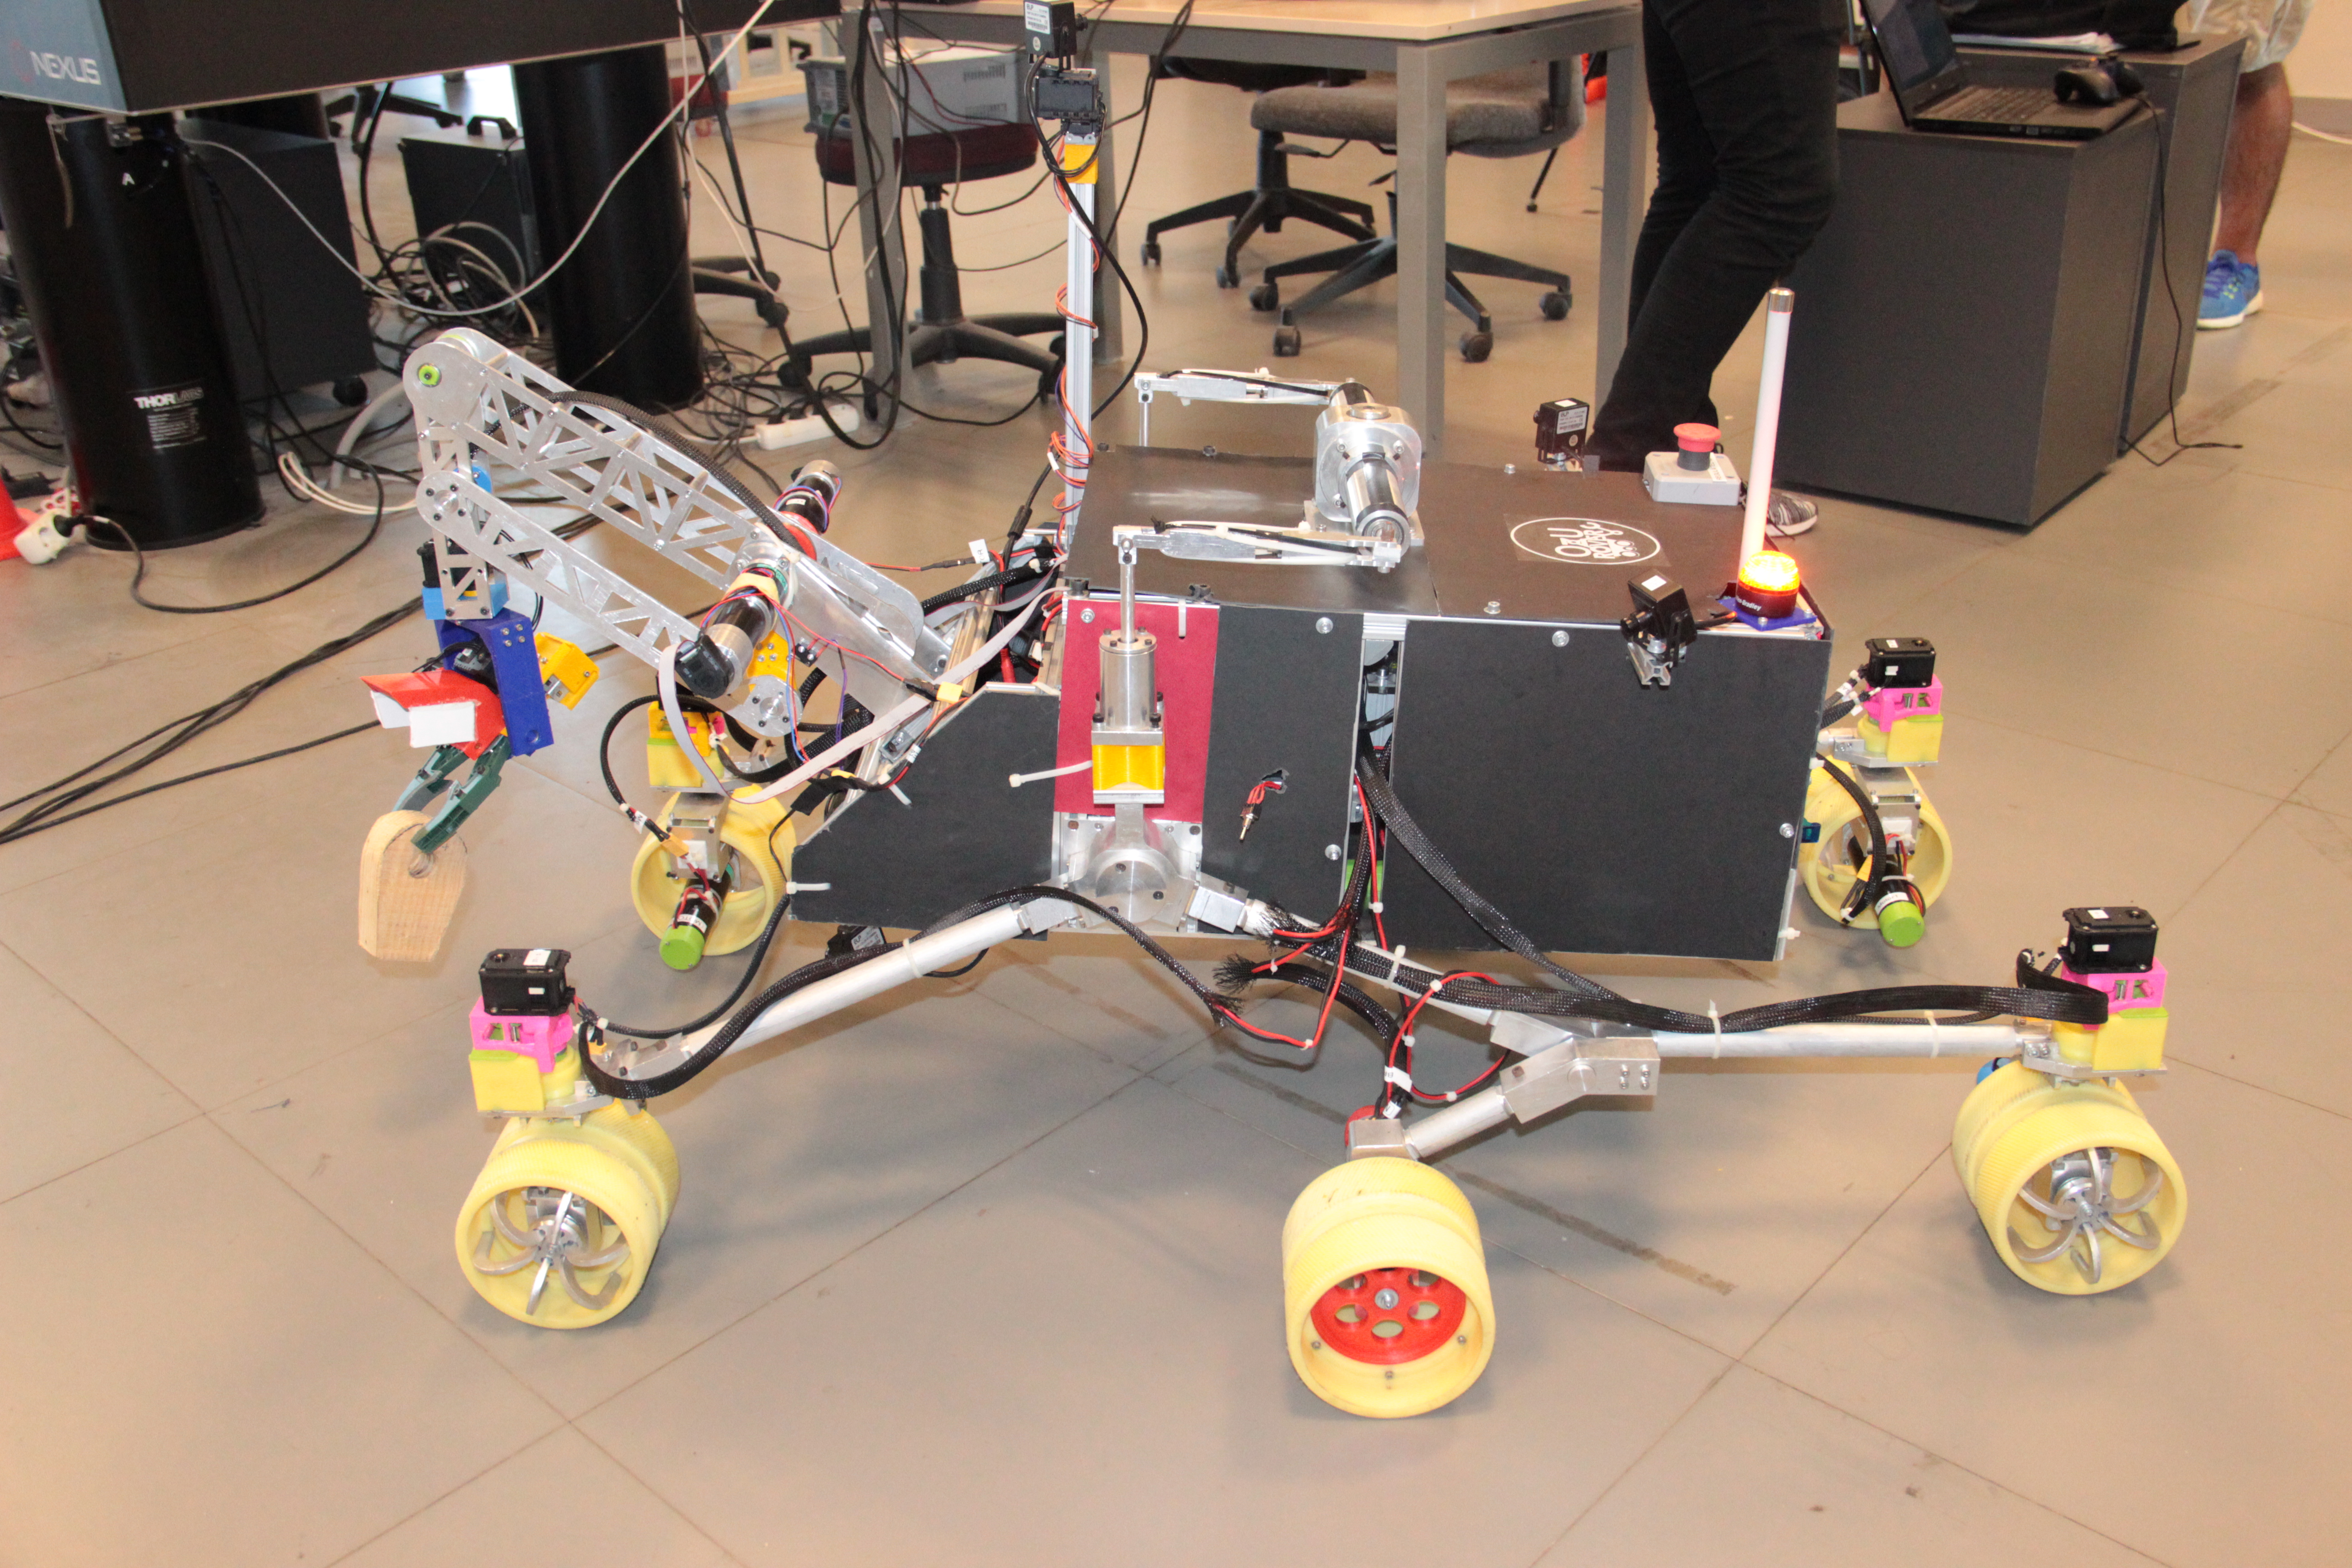 Özyeğin Üniversitesi öğrencilerinin tasarladığı mars robotu ikinci kez Türkiye’den katılan tek takım olarak Polonya’da yarışacak-1143